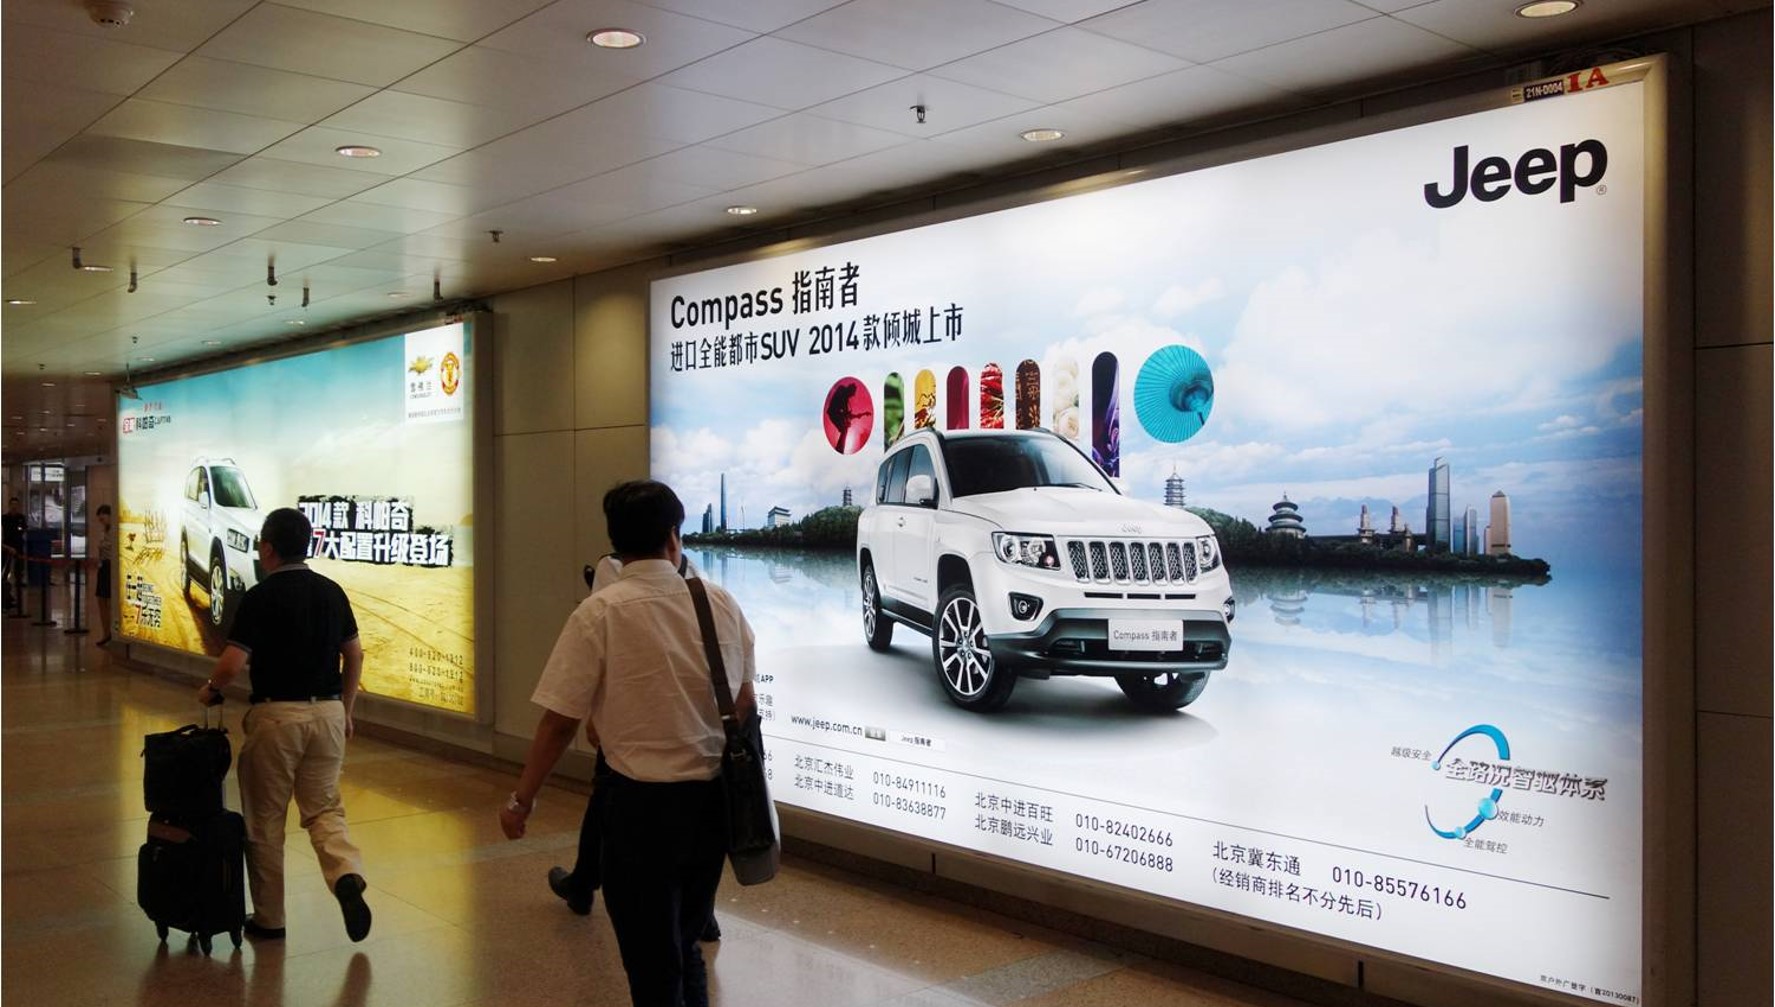 北京朝阳区全朝阳区 首都机场国内行李提取厅灯箱2A机场灯箱广告